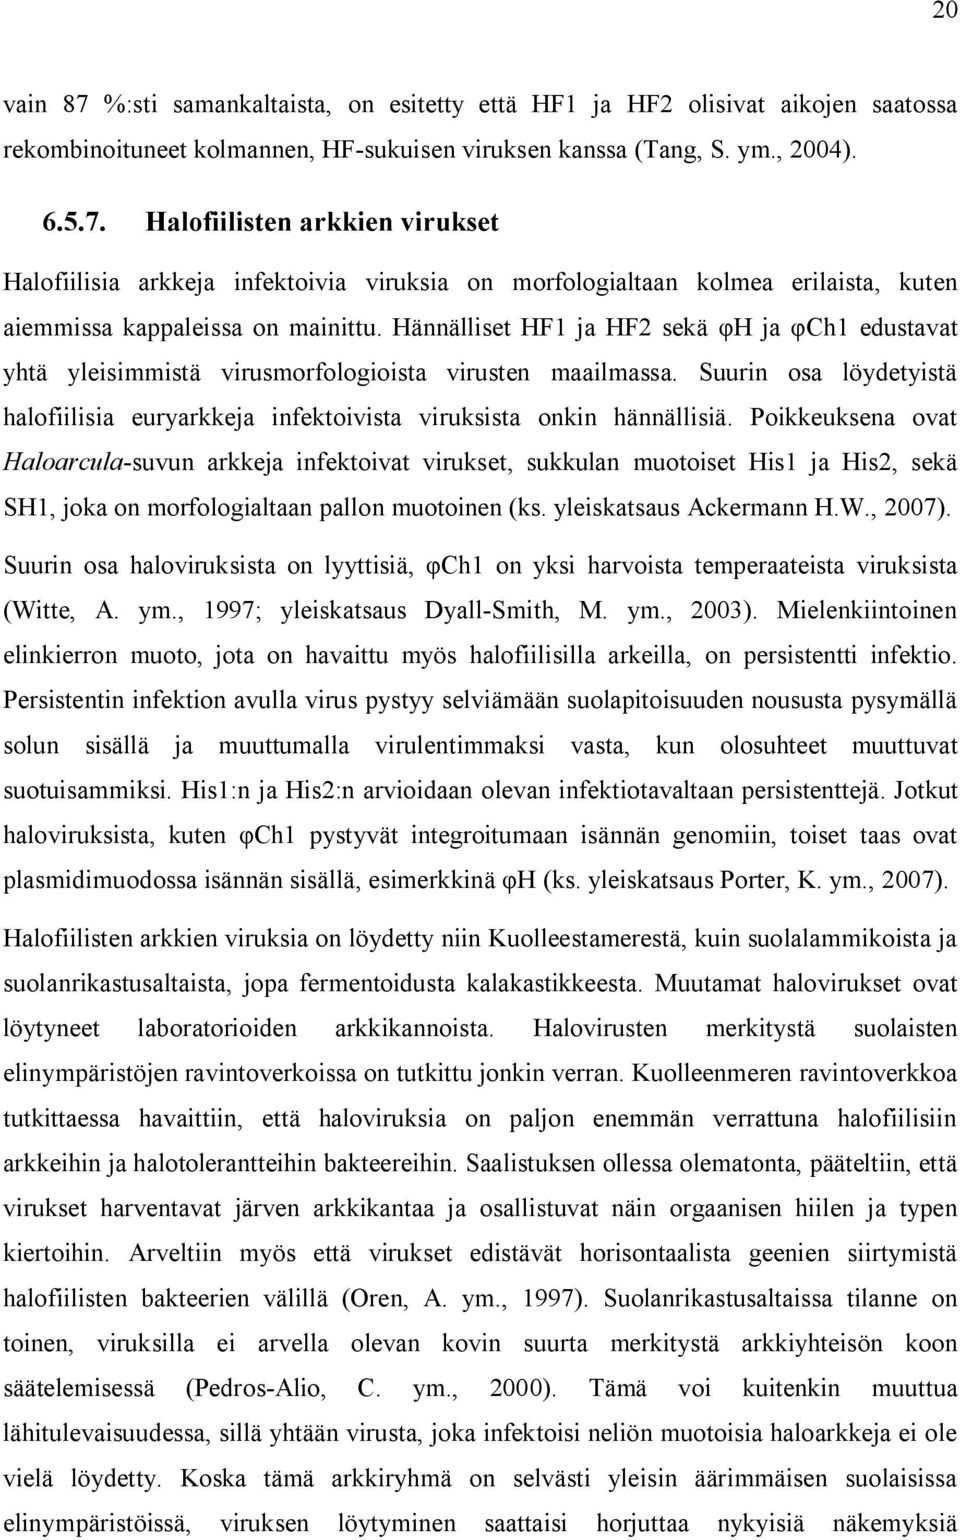 Poikkeuksena ovat Haloarcula-suvun arkkeja infektoivat virukset, sukkulan muotoiset His1 ja His2, sekä SH1, joka on morfologialtaan pallon muotoinen (ks. yleiskatsaus Ackermann H.W., 2007).